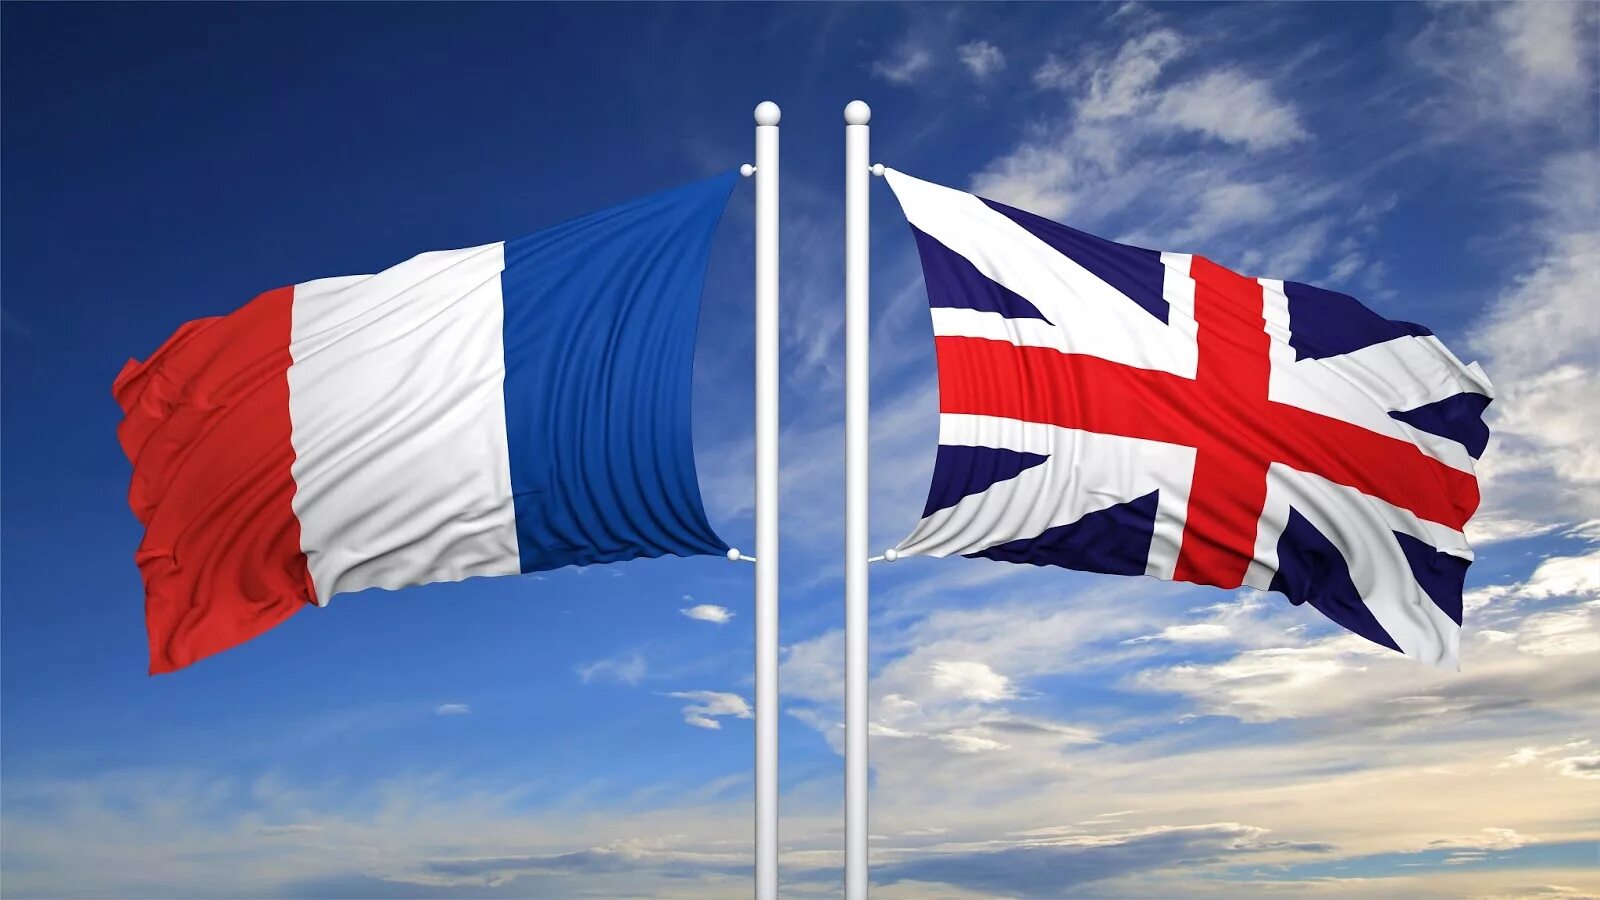 Франция и Великобритания. Флаг Франции и Великобритании. Британия и Франция. Великобритания против Франции. Сша против франции